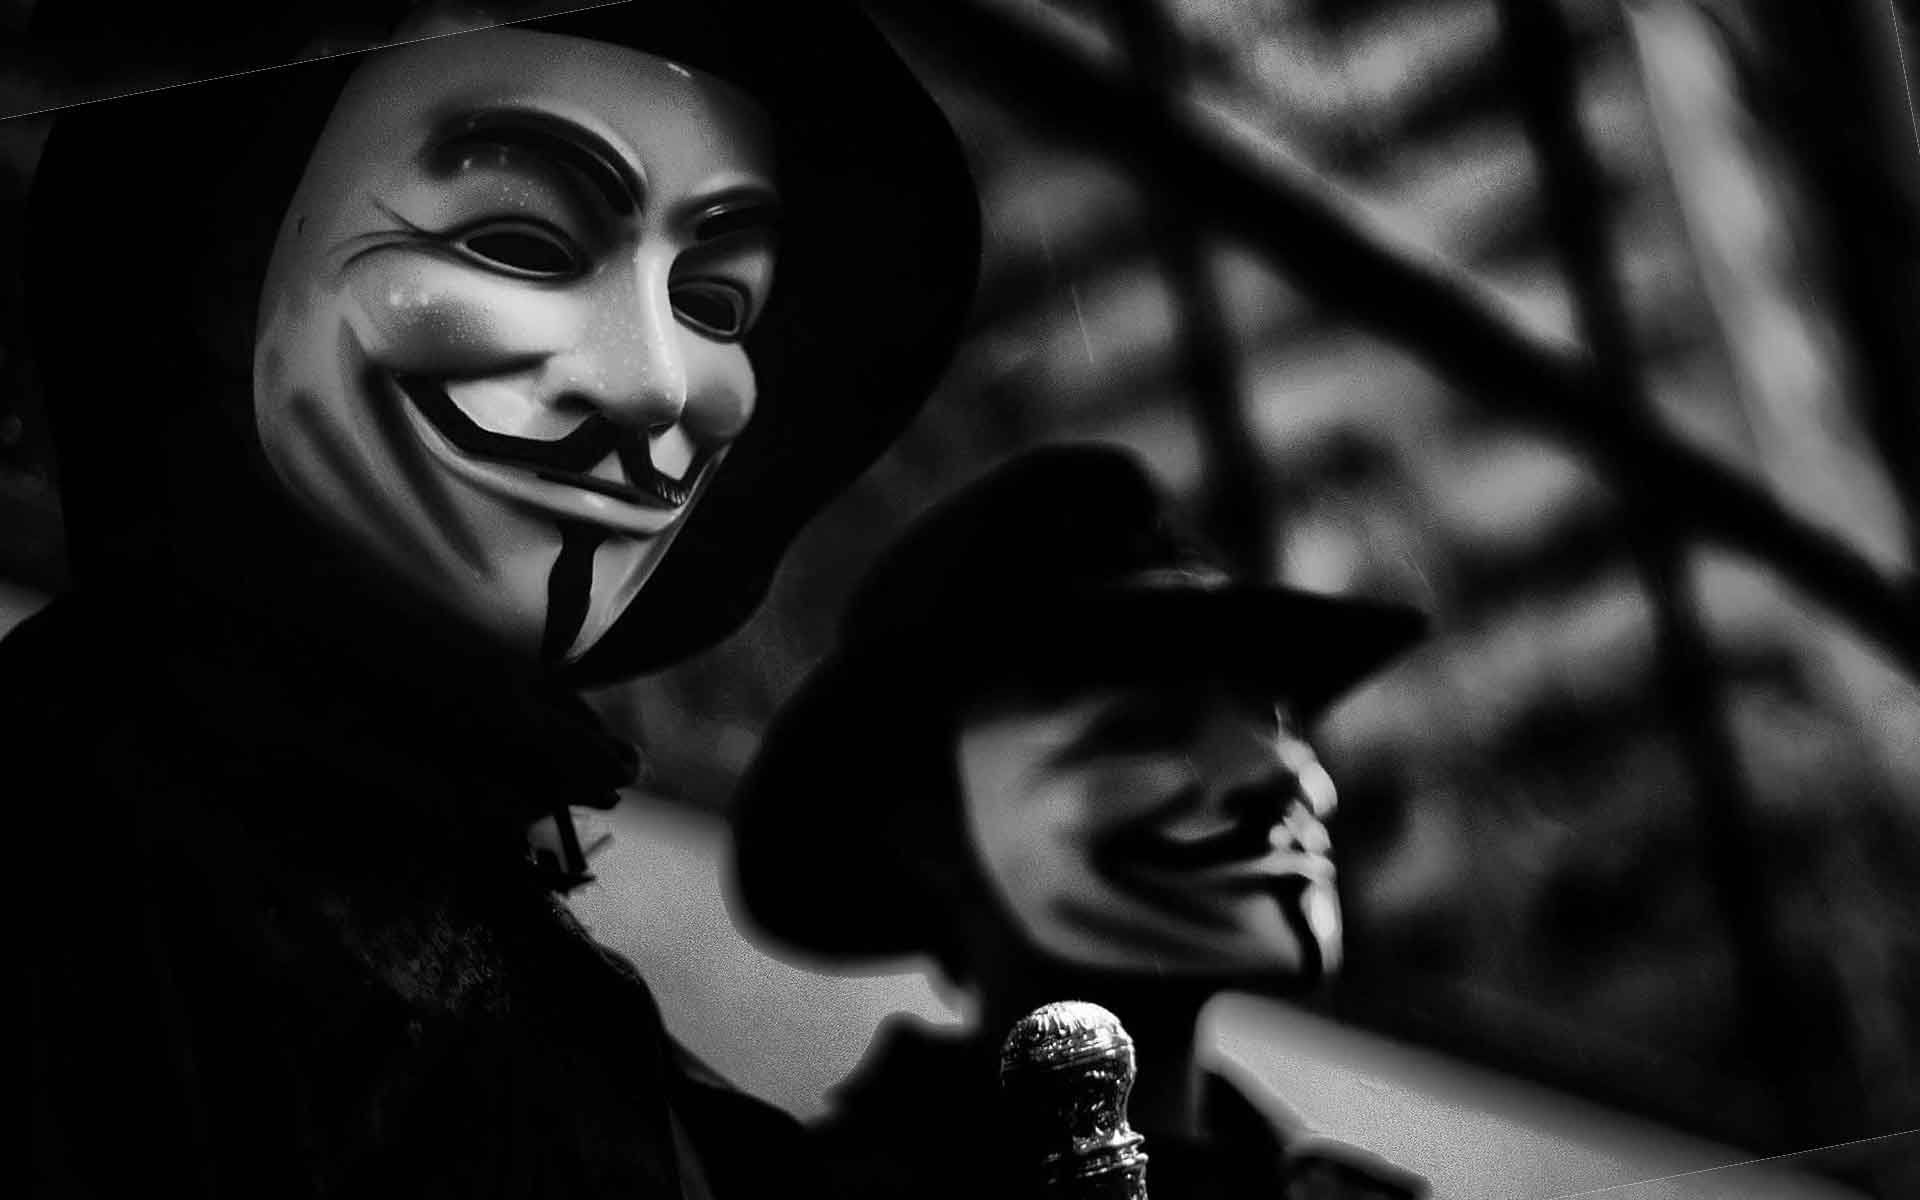 Анонимусы забрали хактивизм с собой в магилу